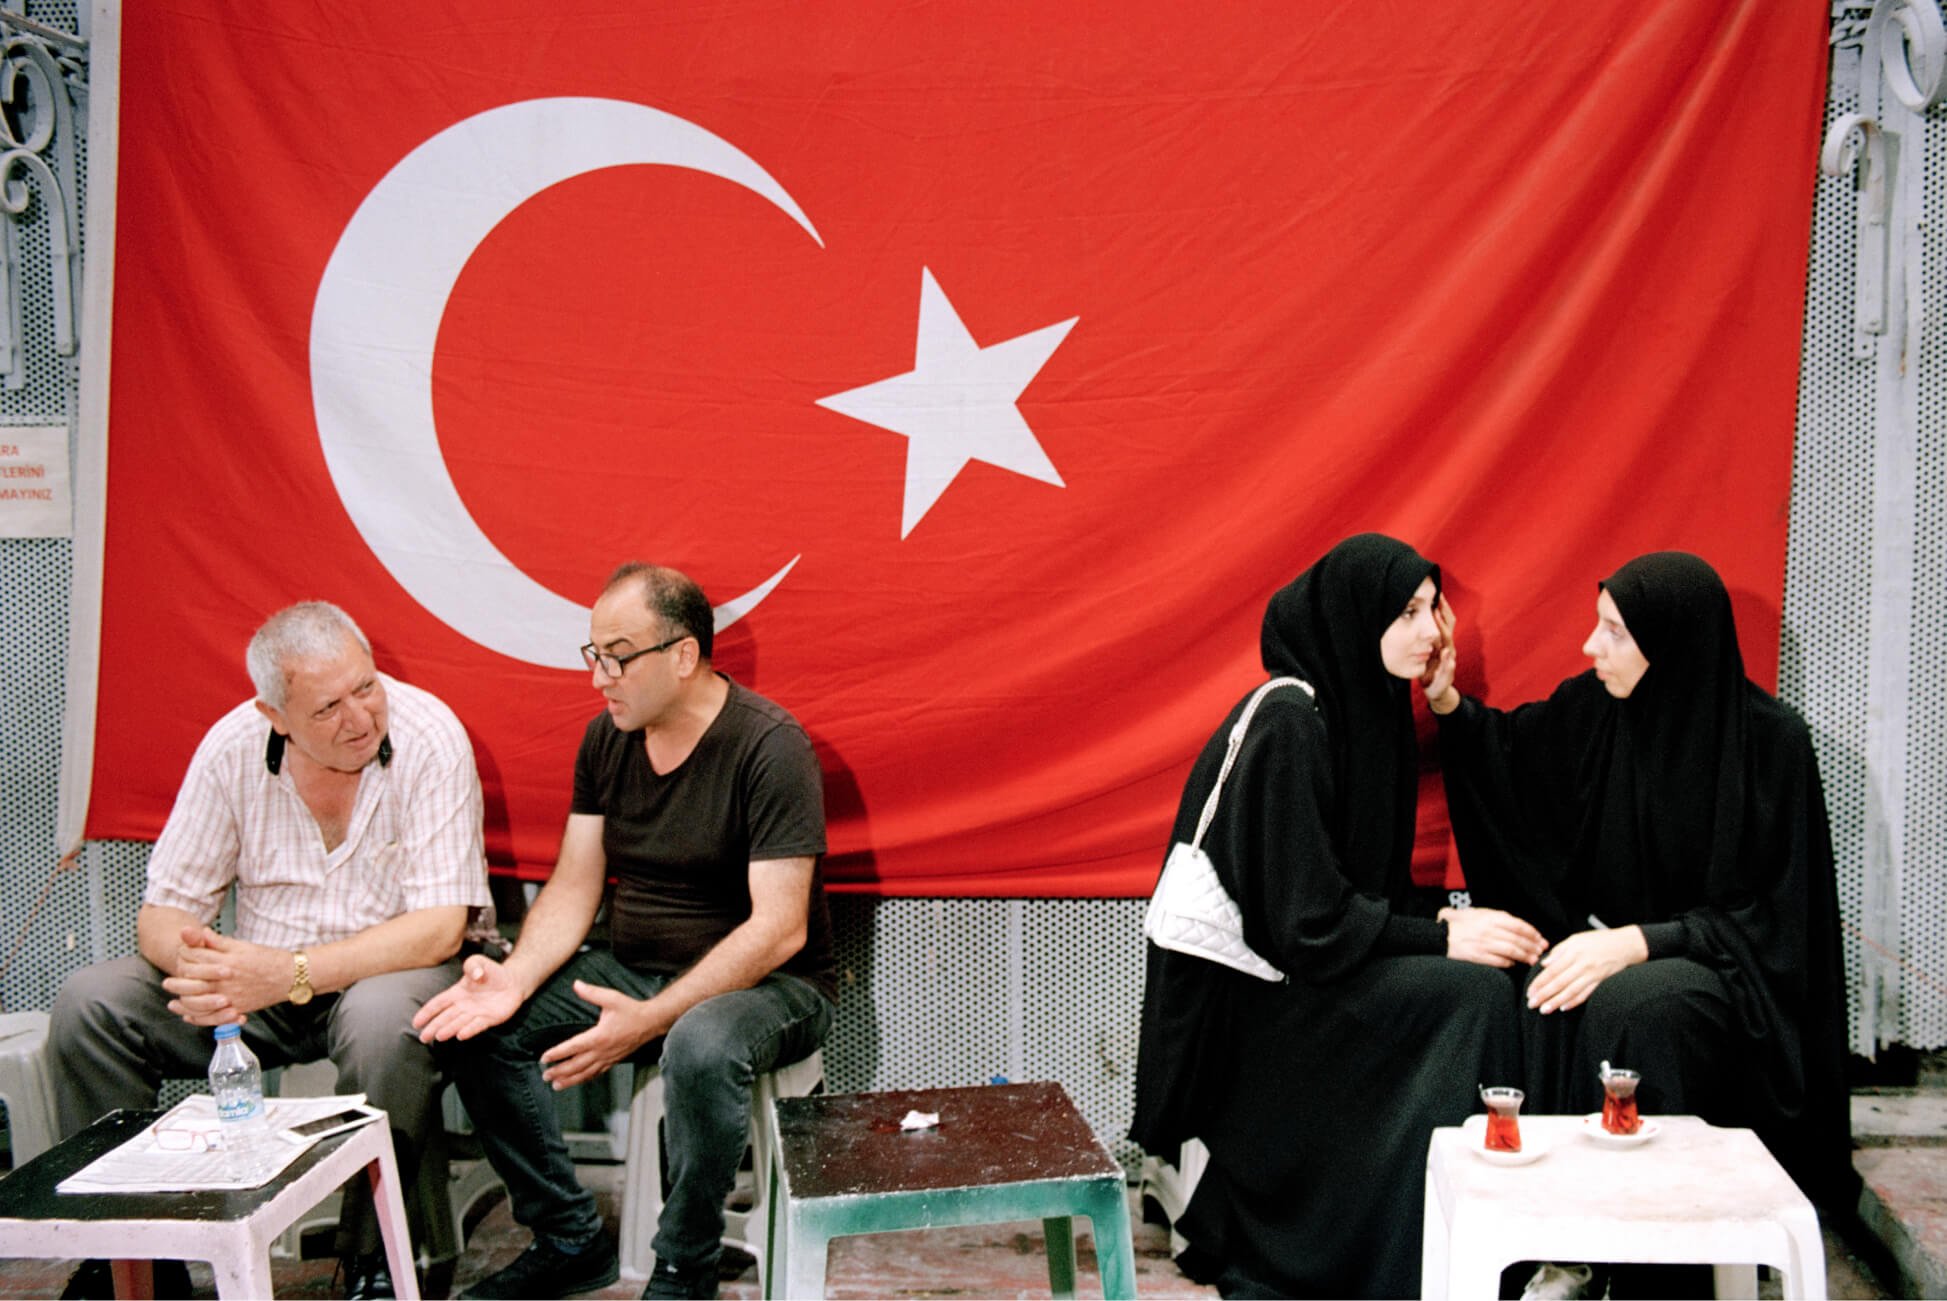 Deux hommes et deux femmes voilées sont assis séparément dans un salon de thé avec un drapeau turc en arrière-plan.